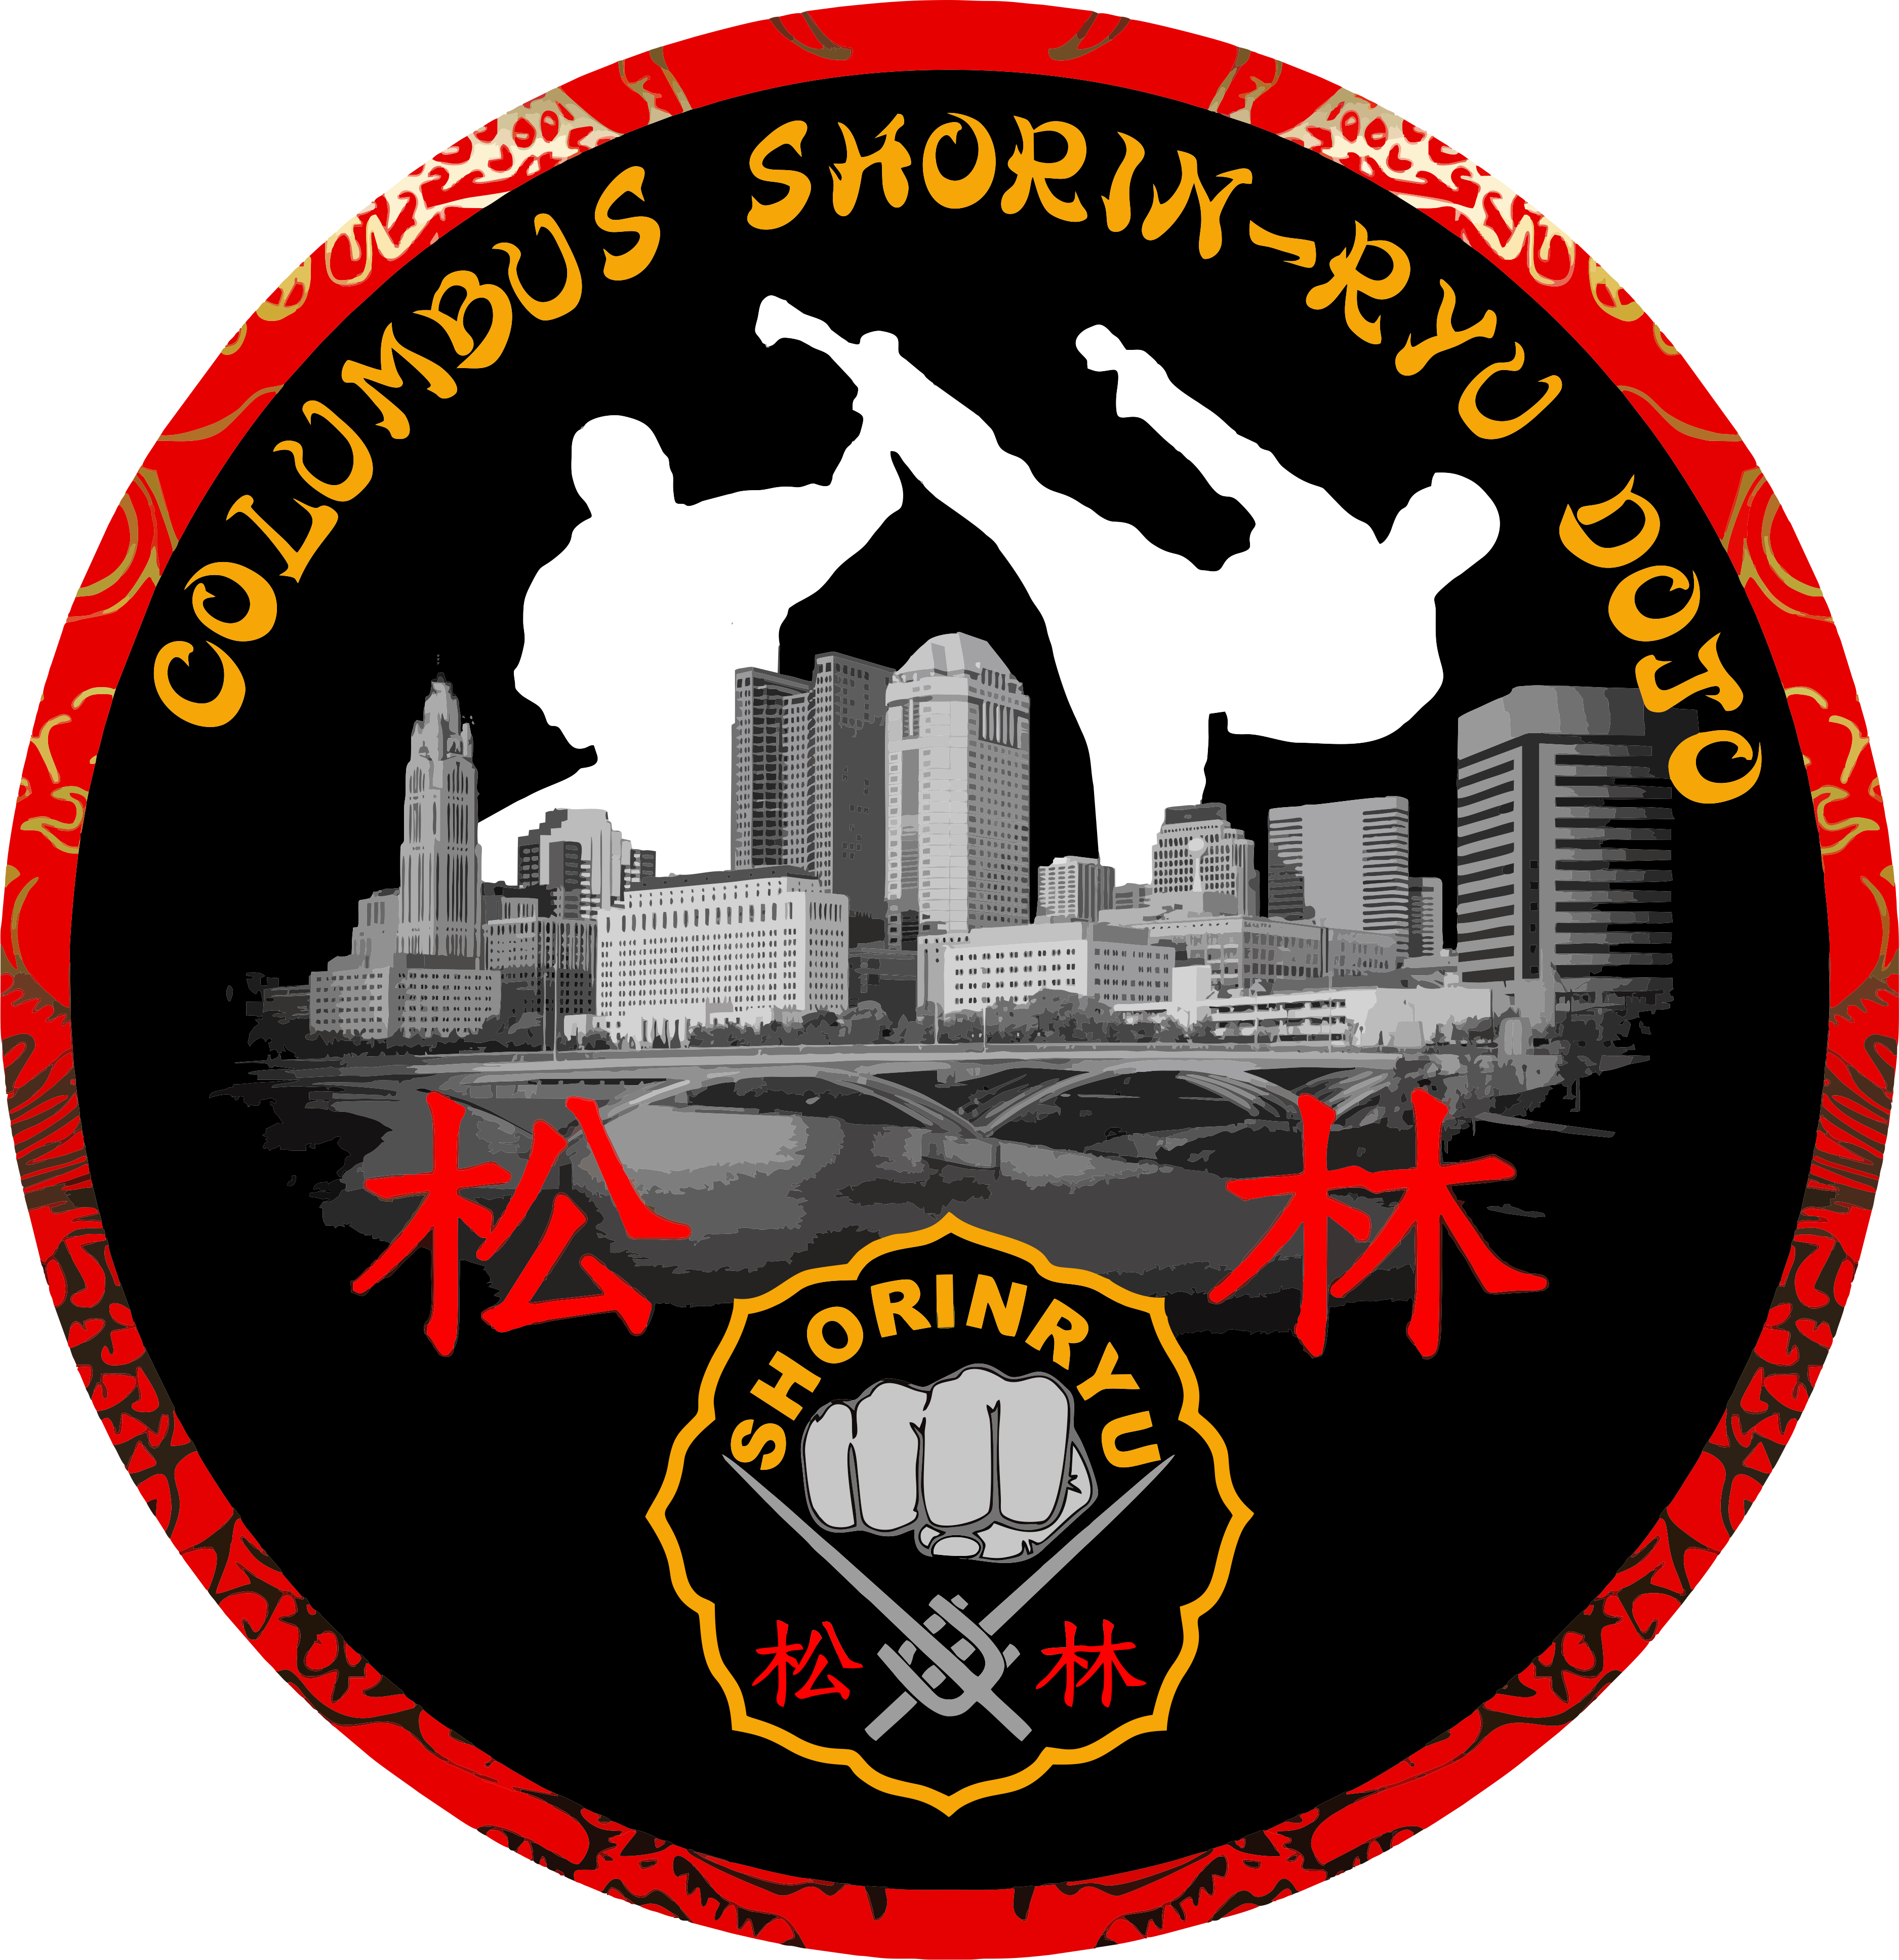 Columbus Shorin-Ryu